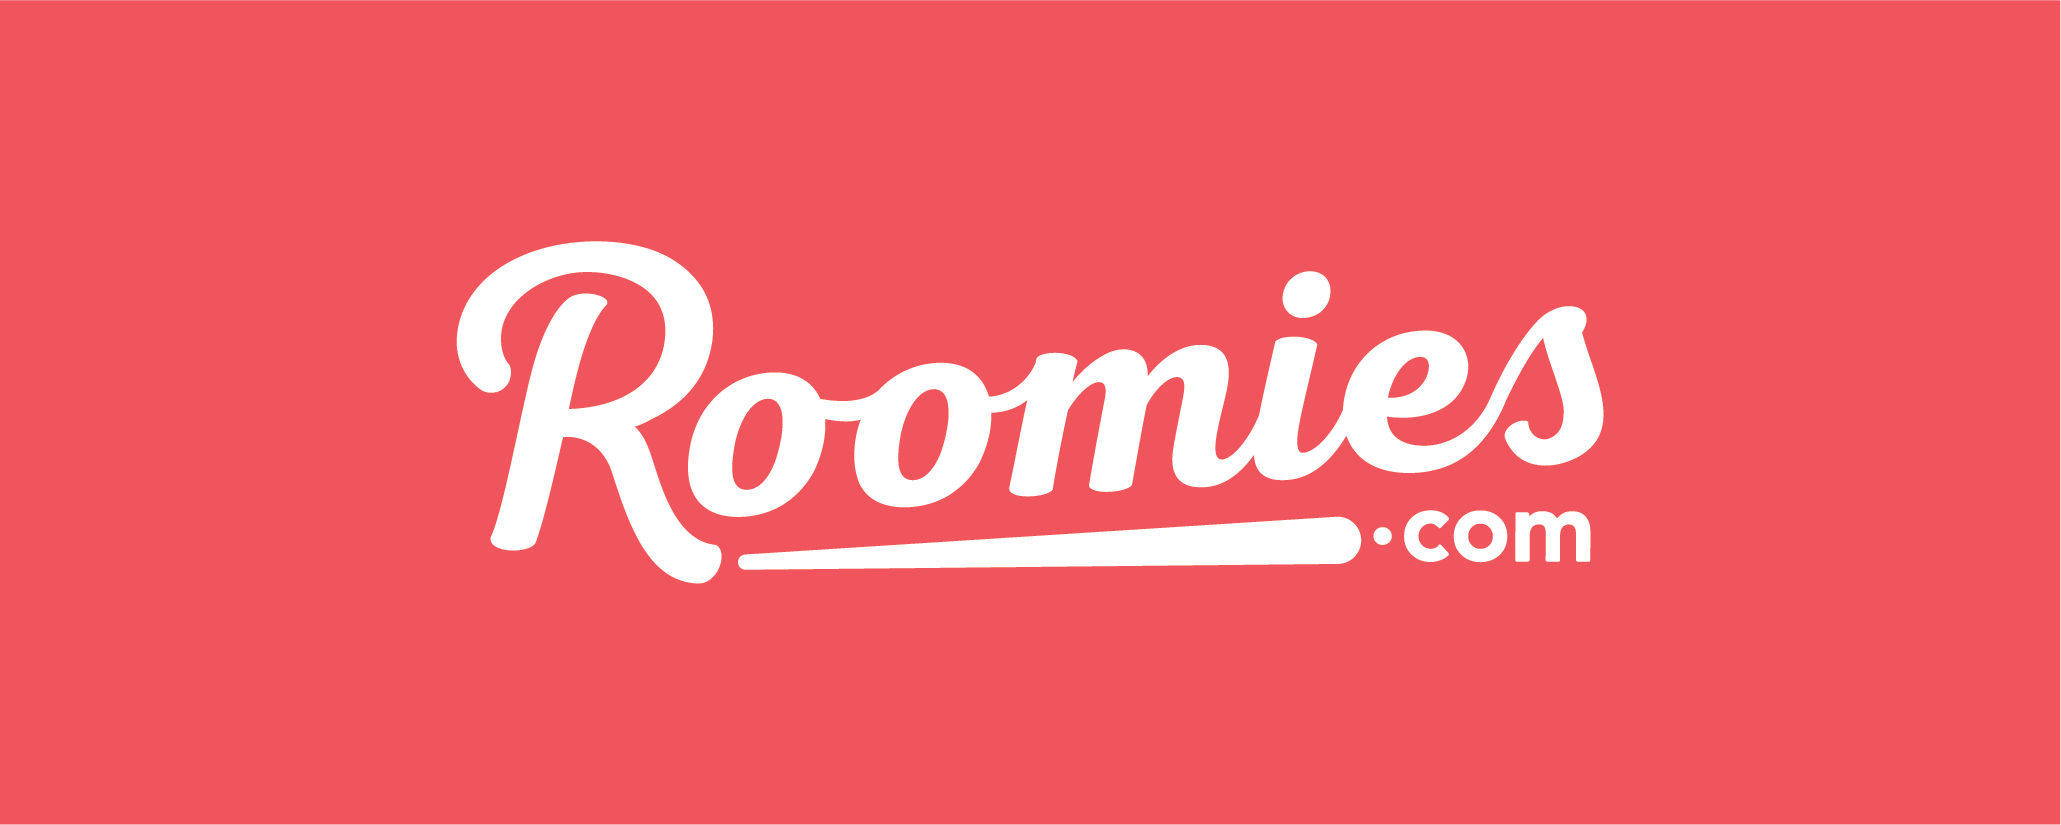 Roommate finder - Roomies